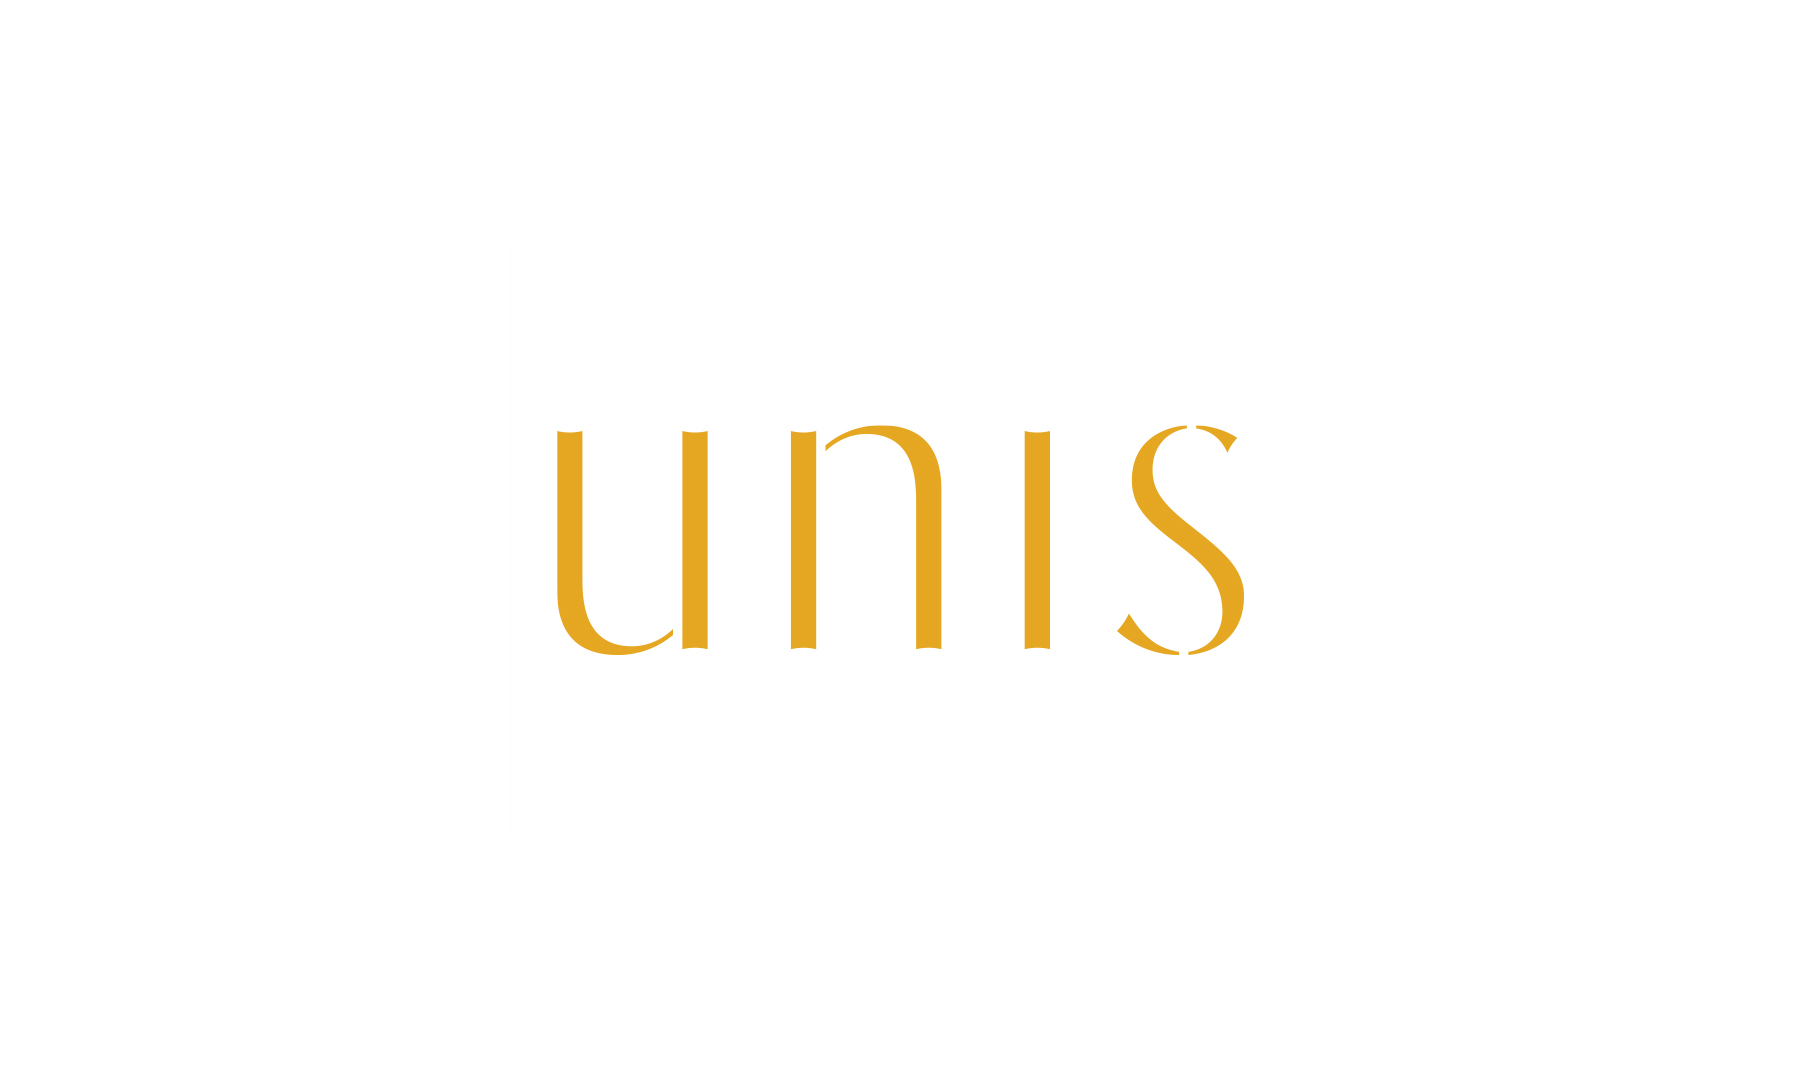 unis's images1